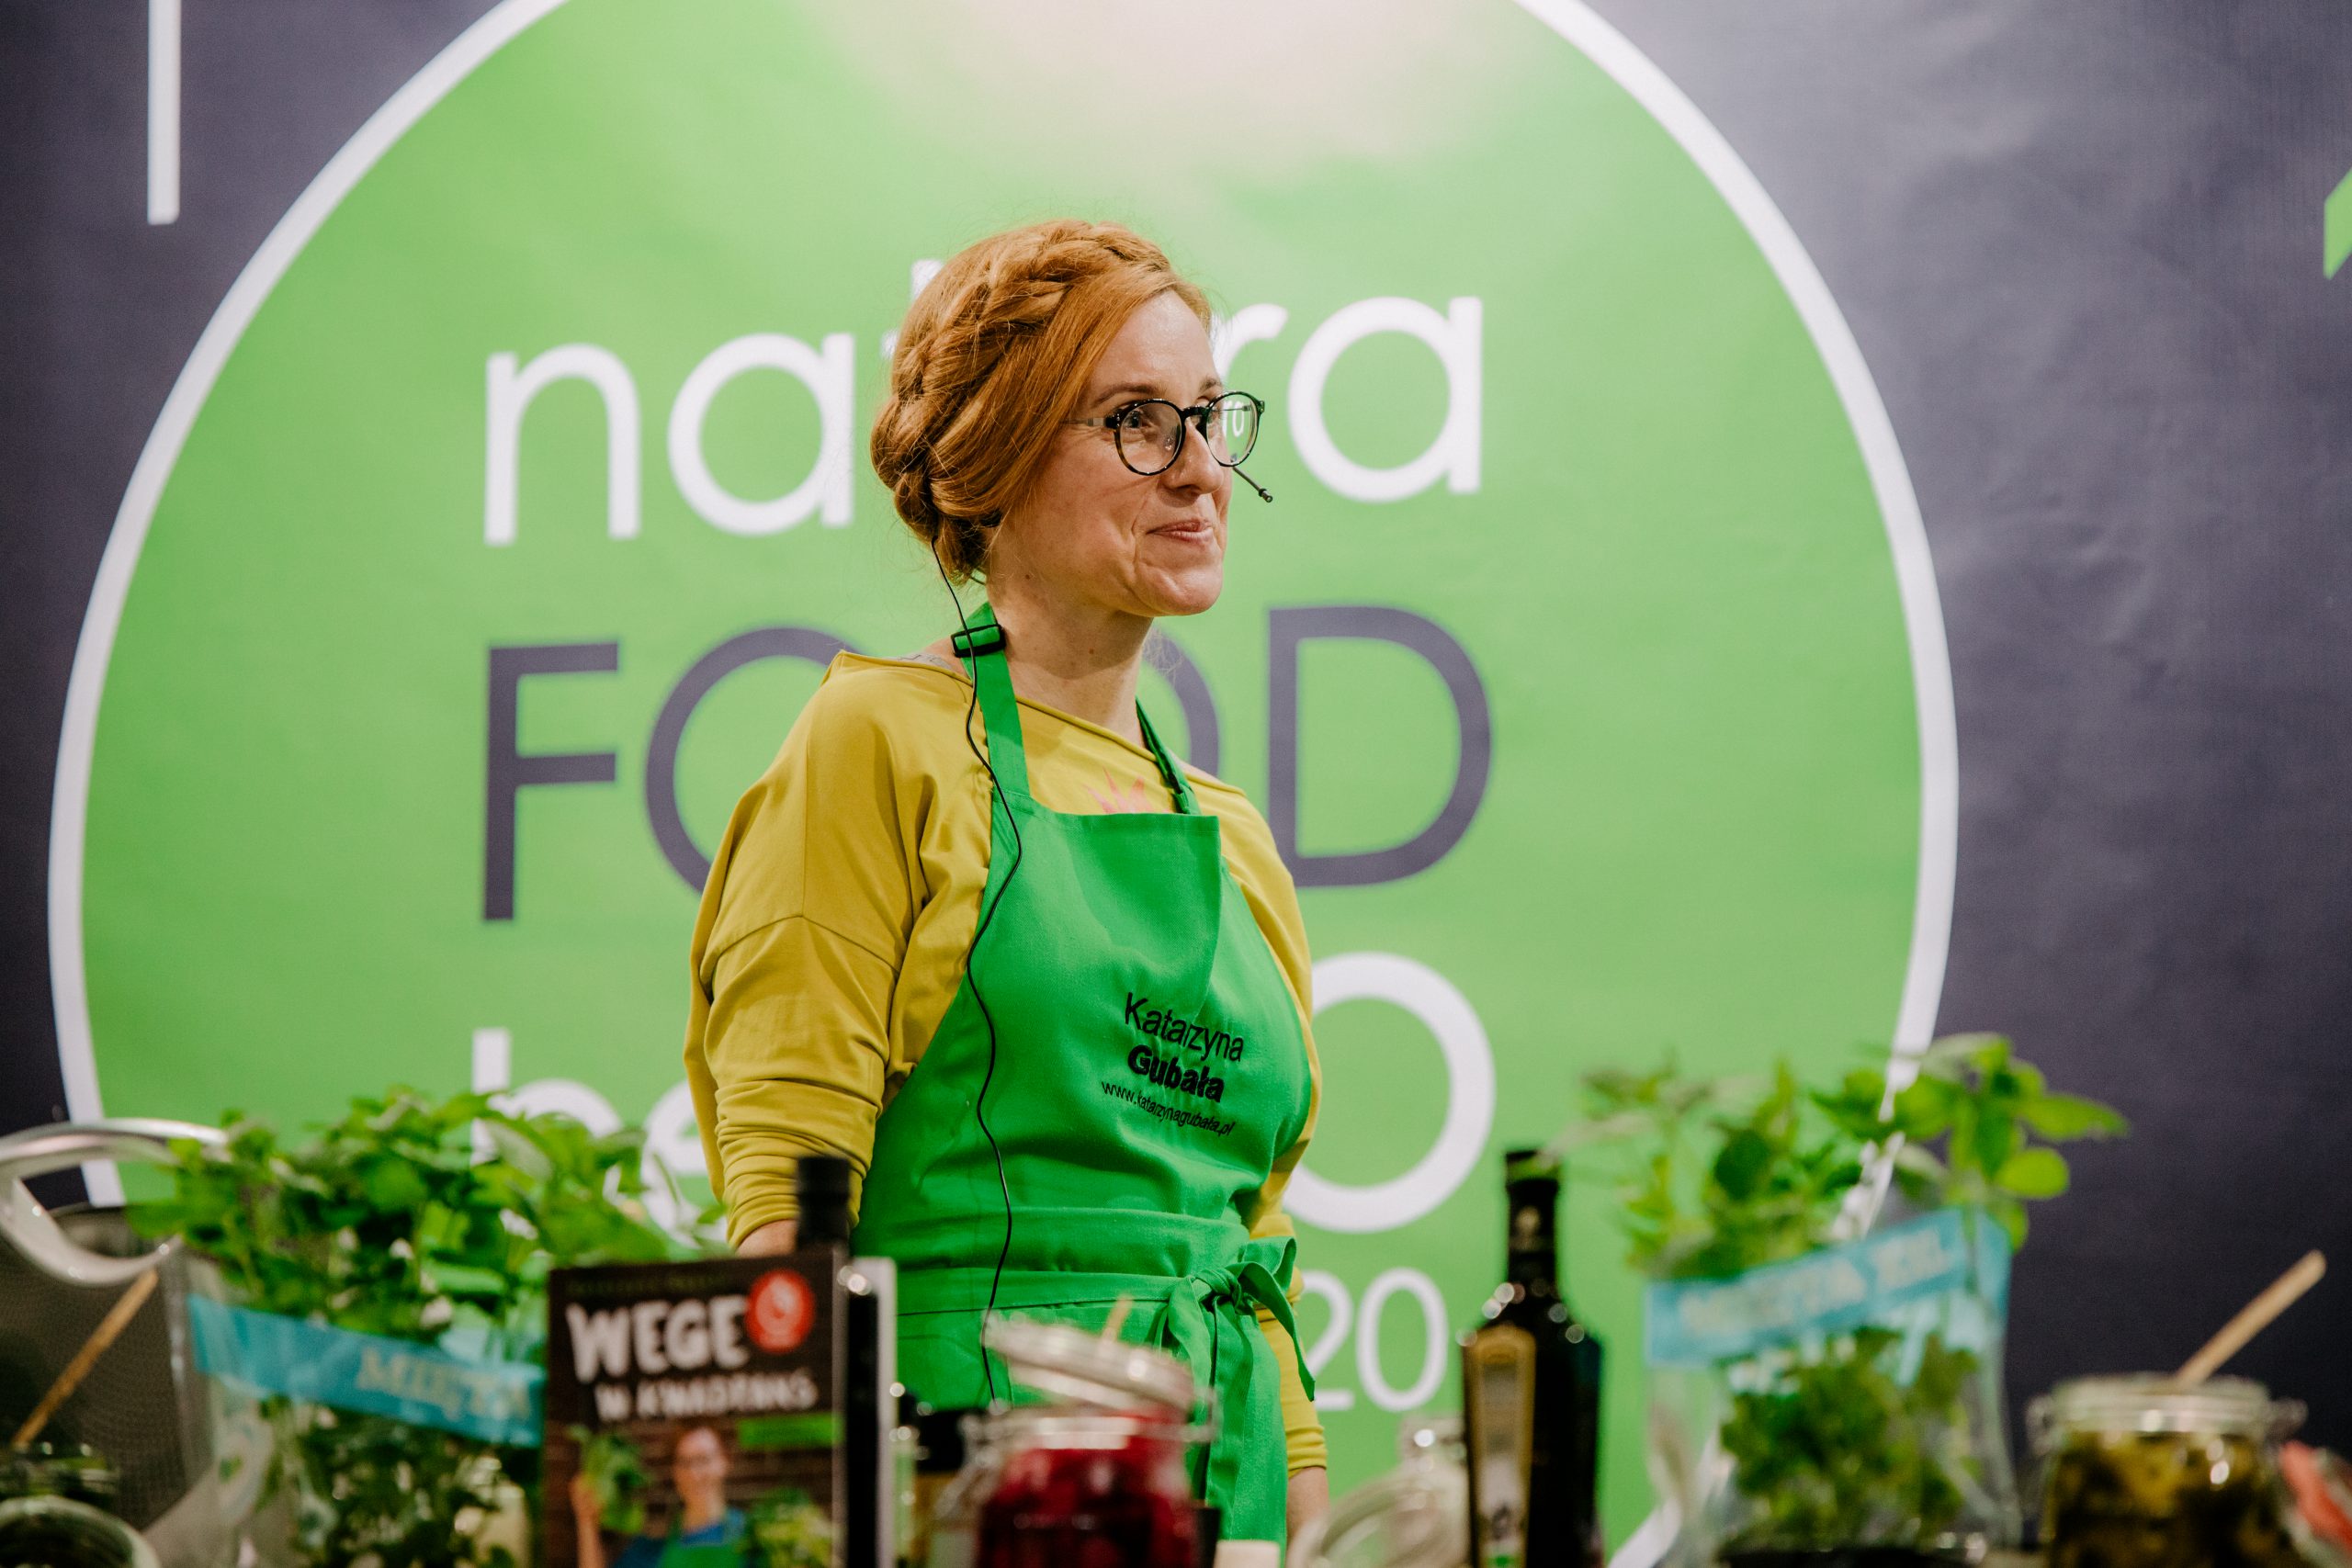 Na zdjęciu widać Katarzynę Gubałę prowadzącą warsztaty kulinarne.